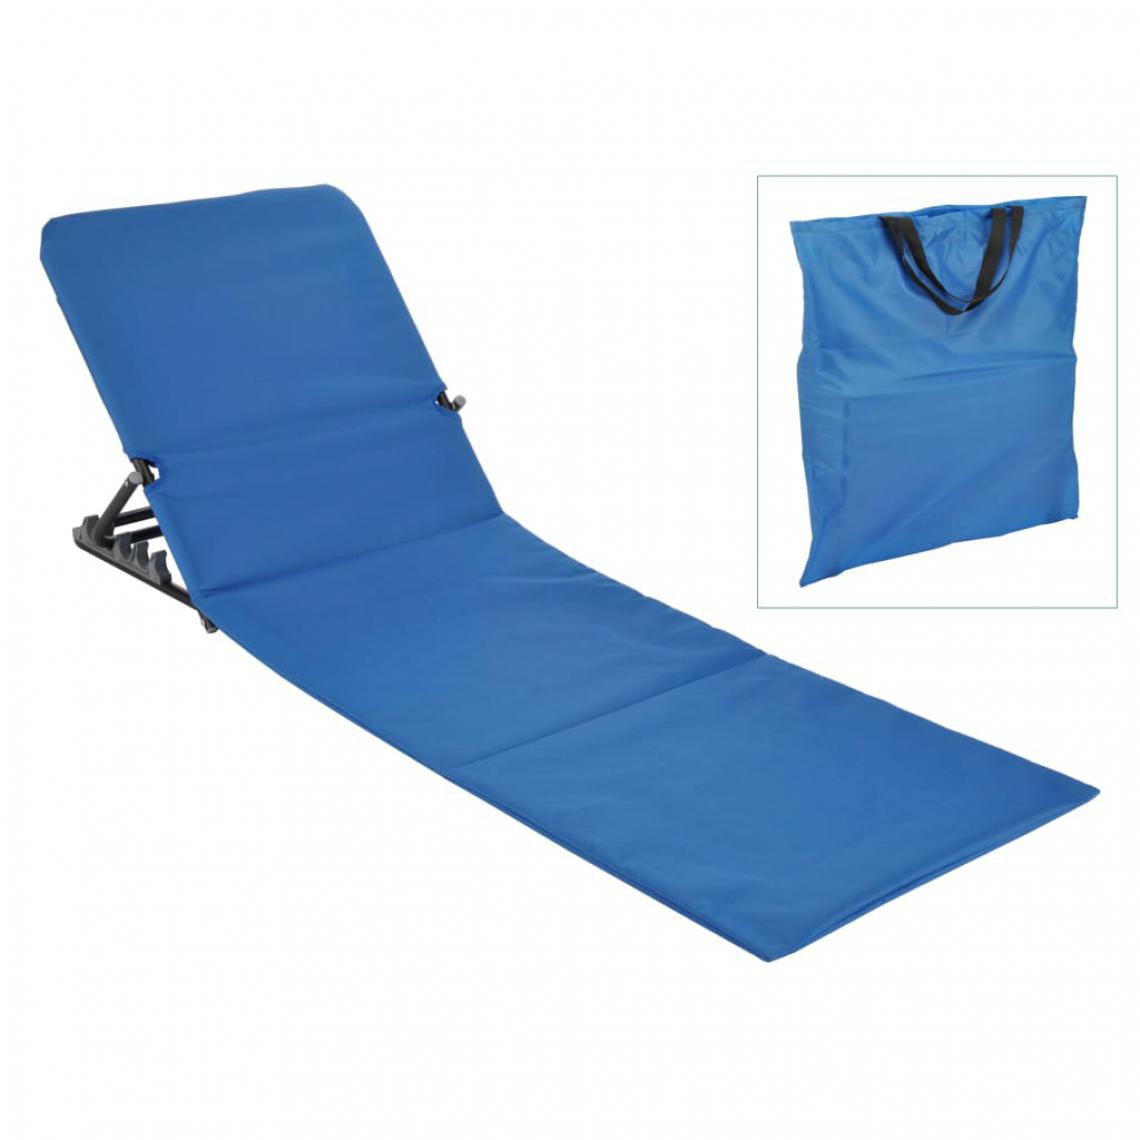 Icaverne - sublime Sièges de jardin gamme Tallinn HI Chaise tapis de plage pliable PVC Bleu - Transats, chaises longues